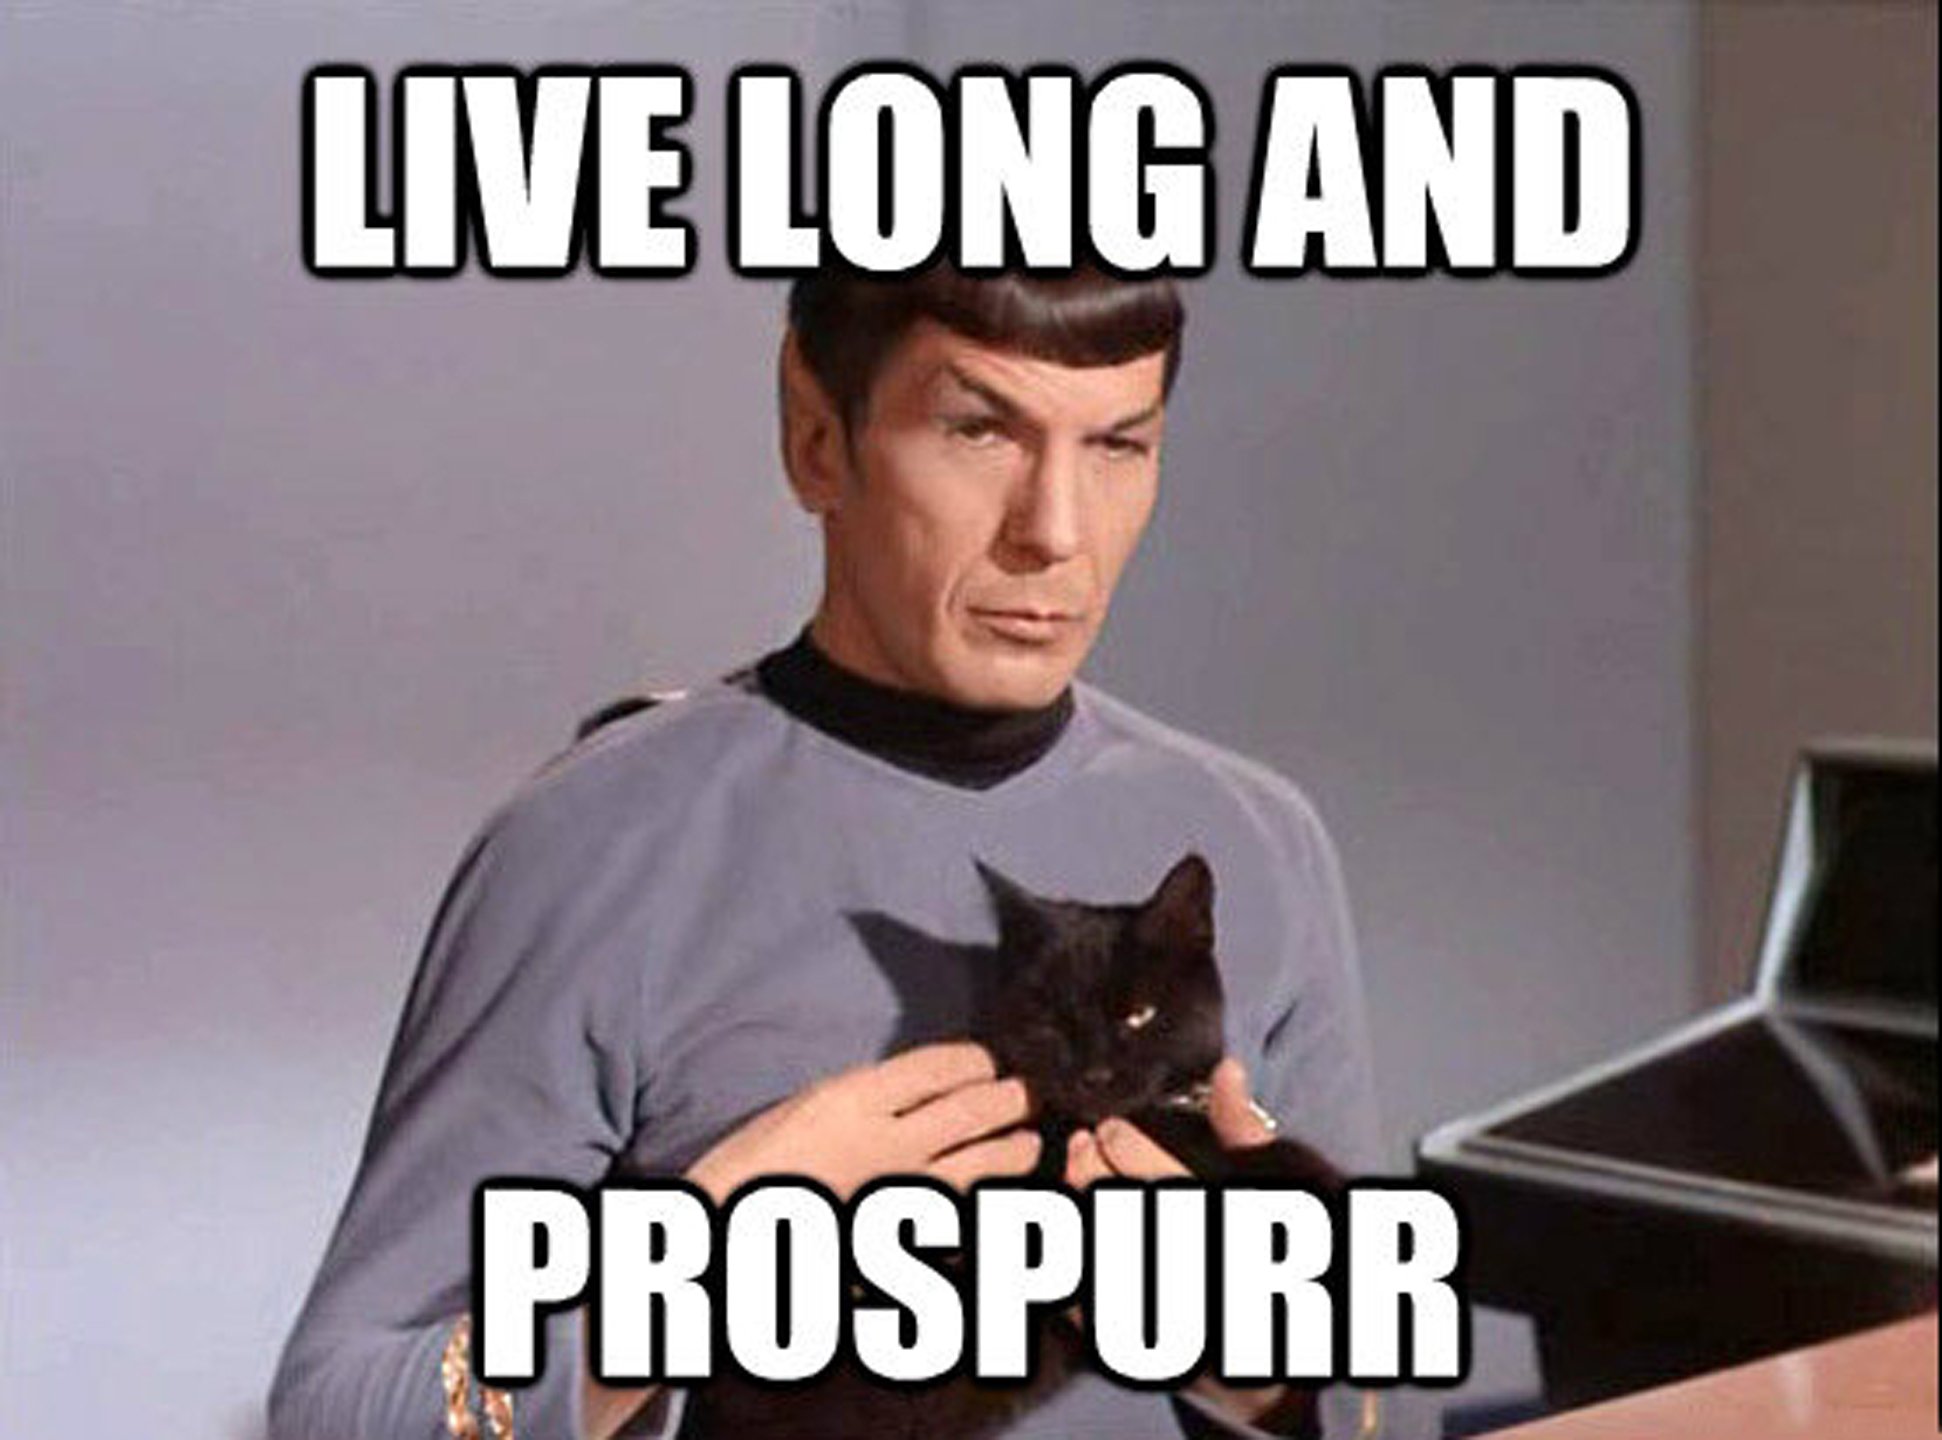 Star-Trek-Prospurr-Spock-Meme.jpg